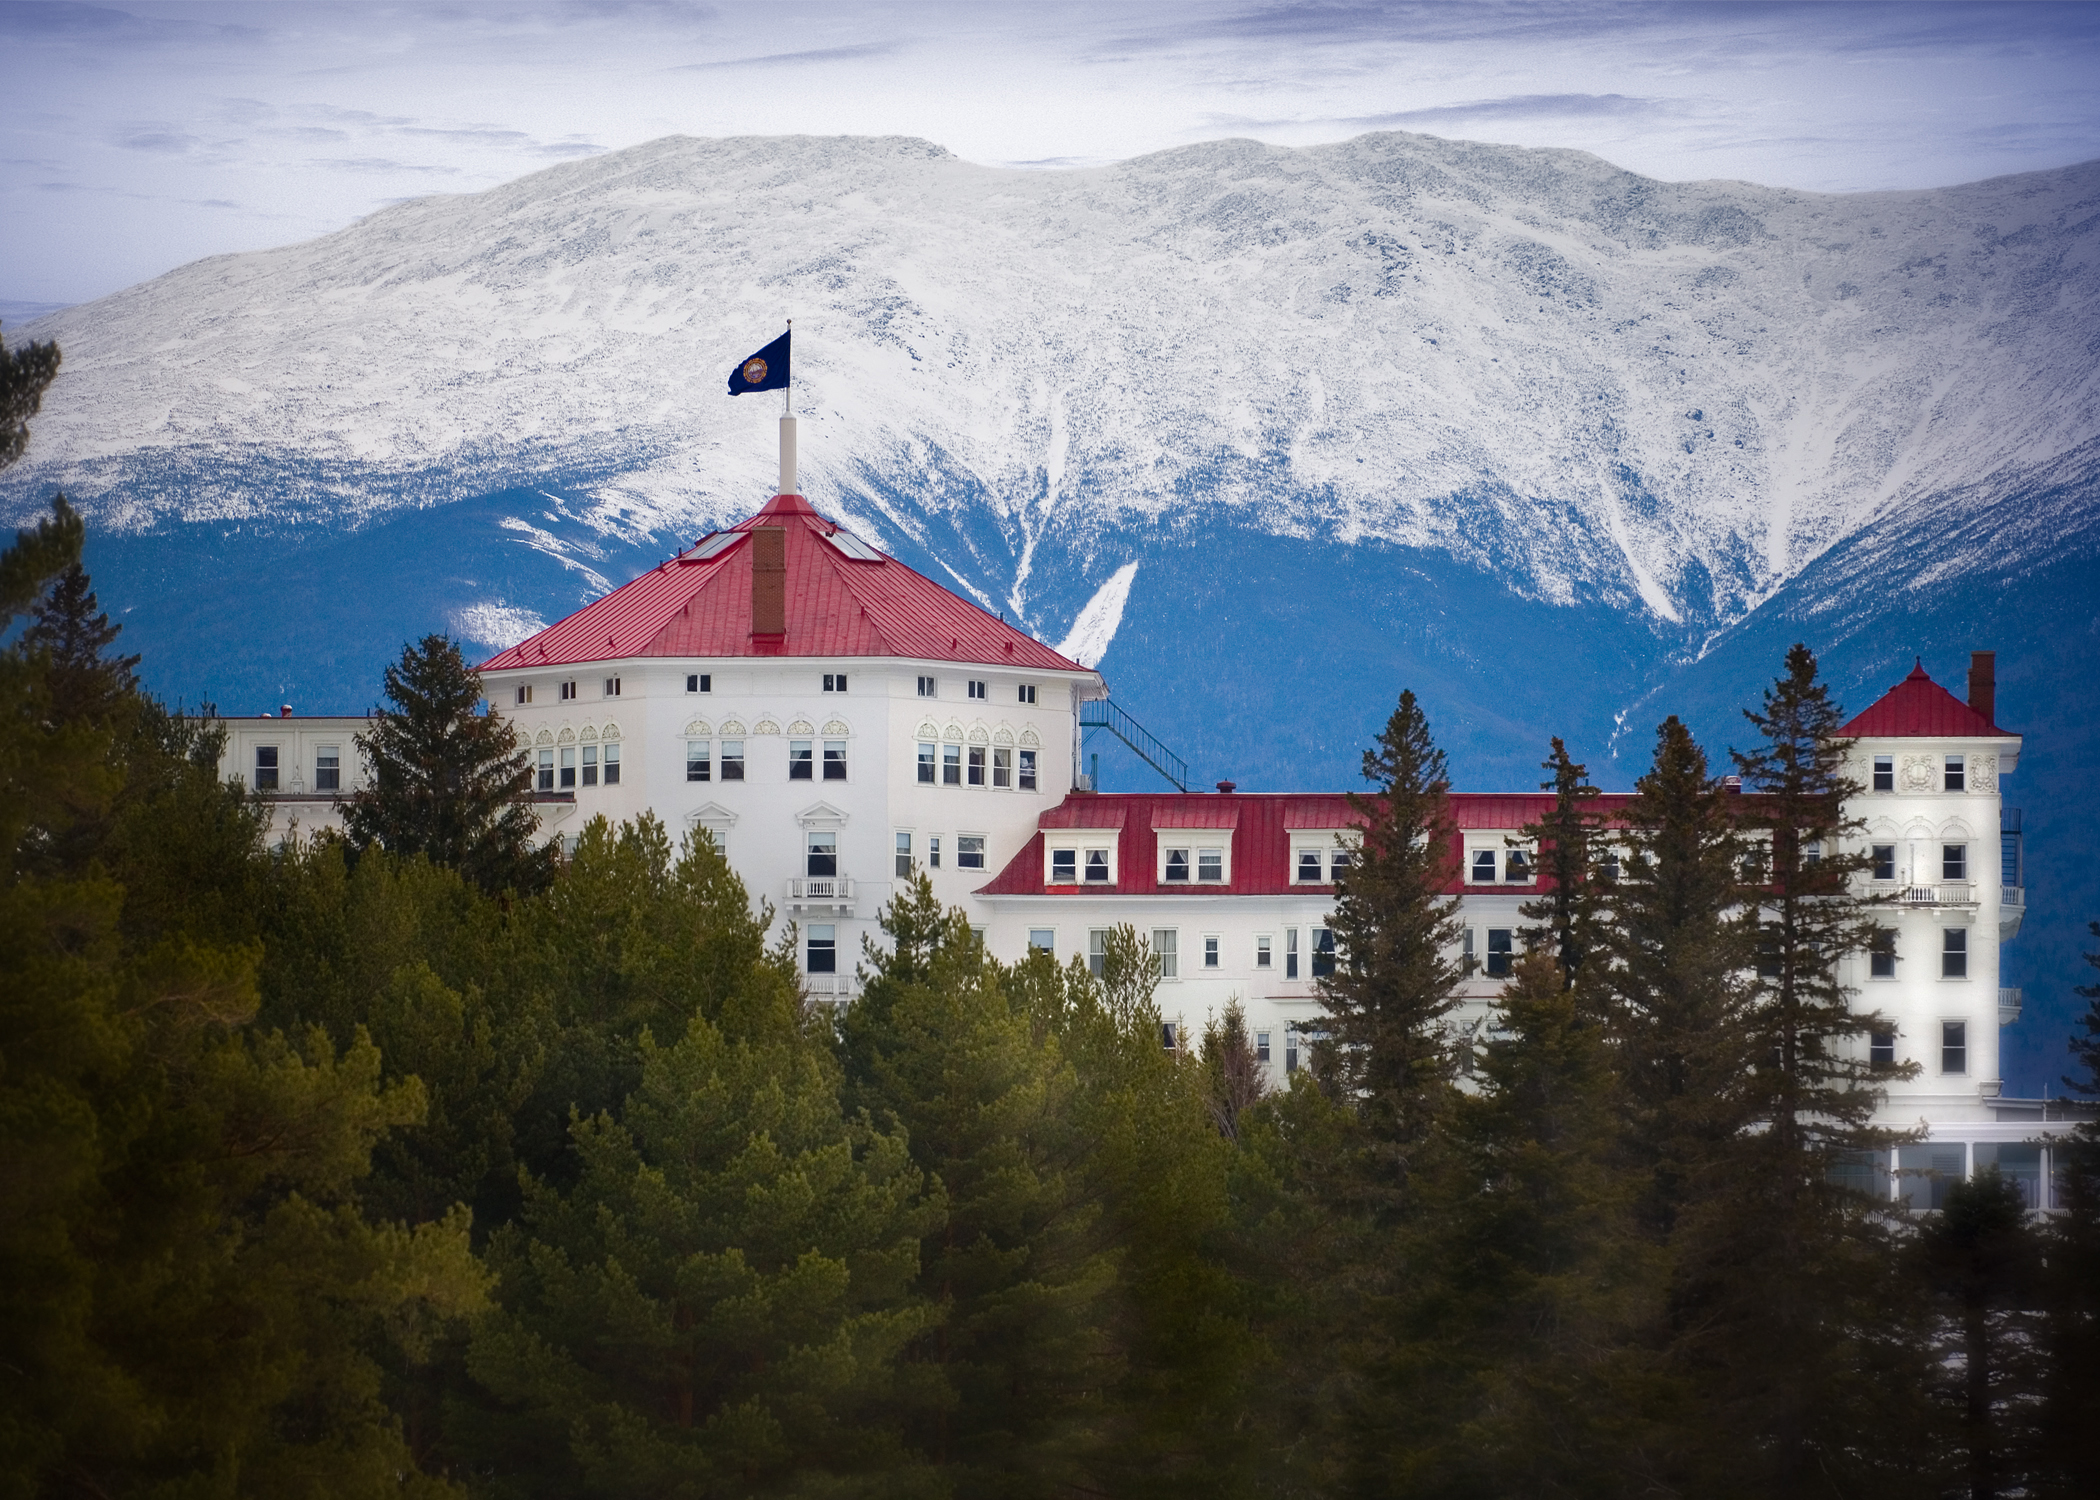 Một khách sạn kỳ vĩ trong dãy núi White Mountain